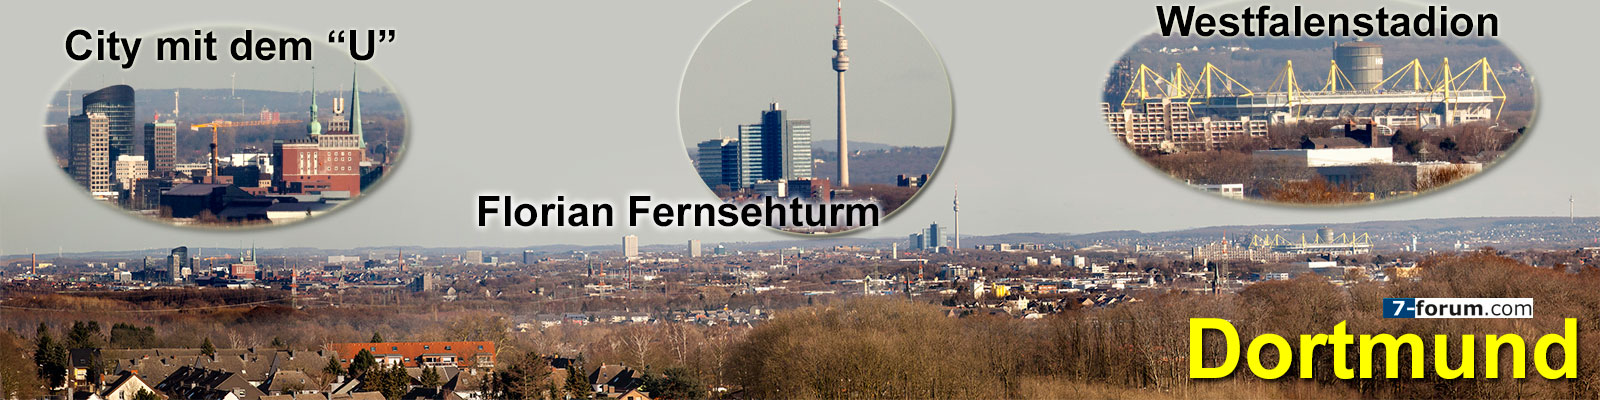 Skyline von Dortmund, gesehen vom Frderturm der Zeche Zollern